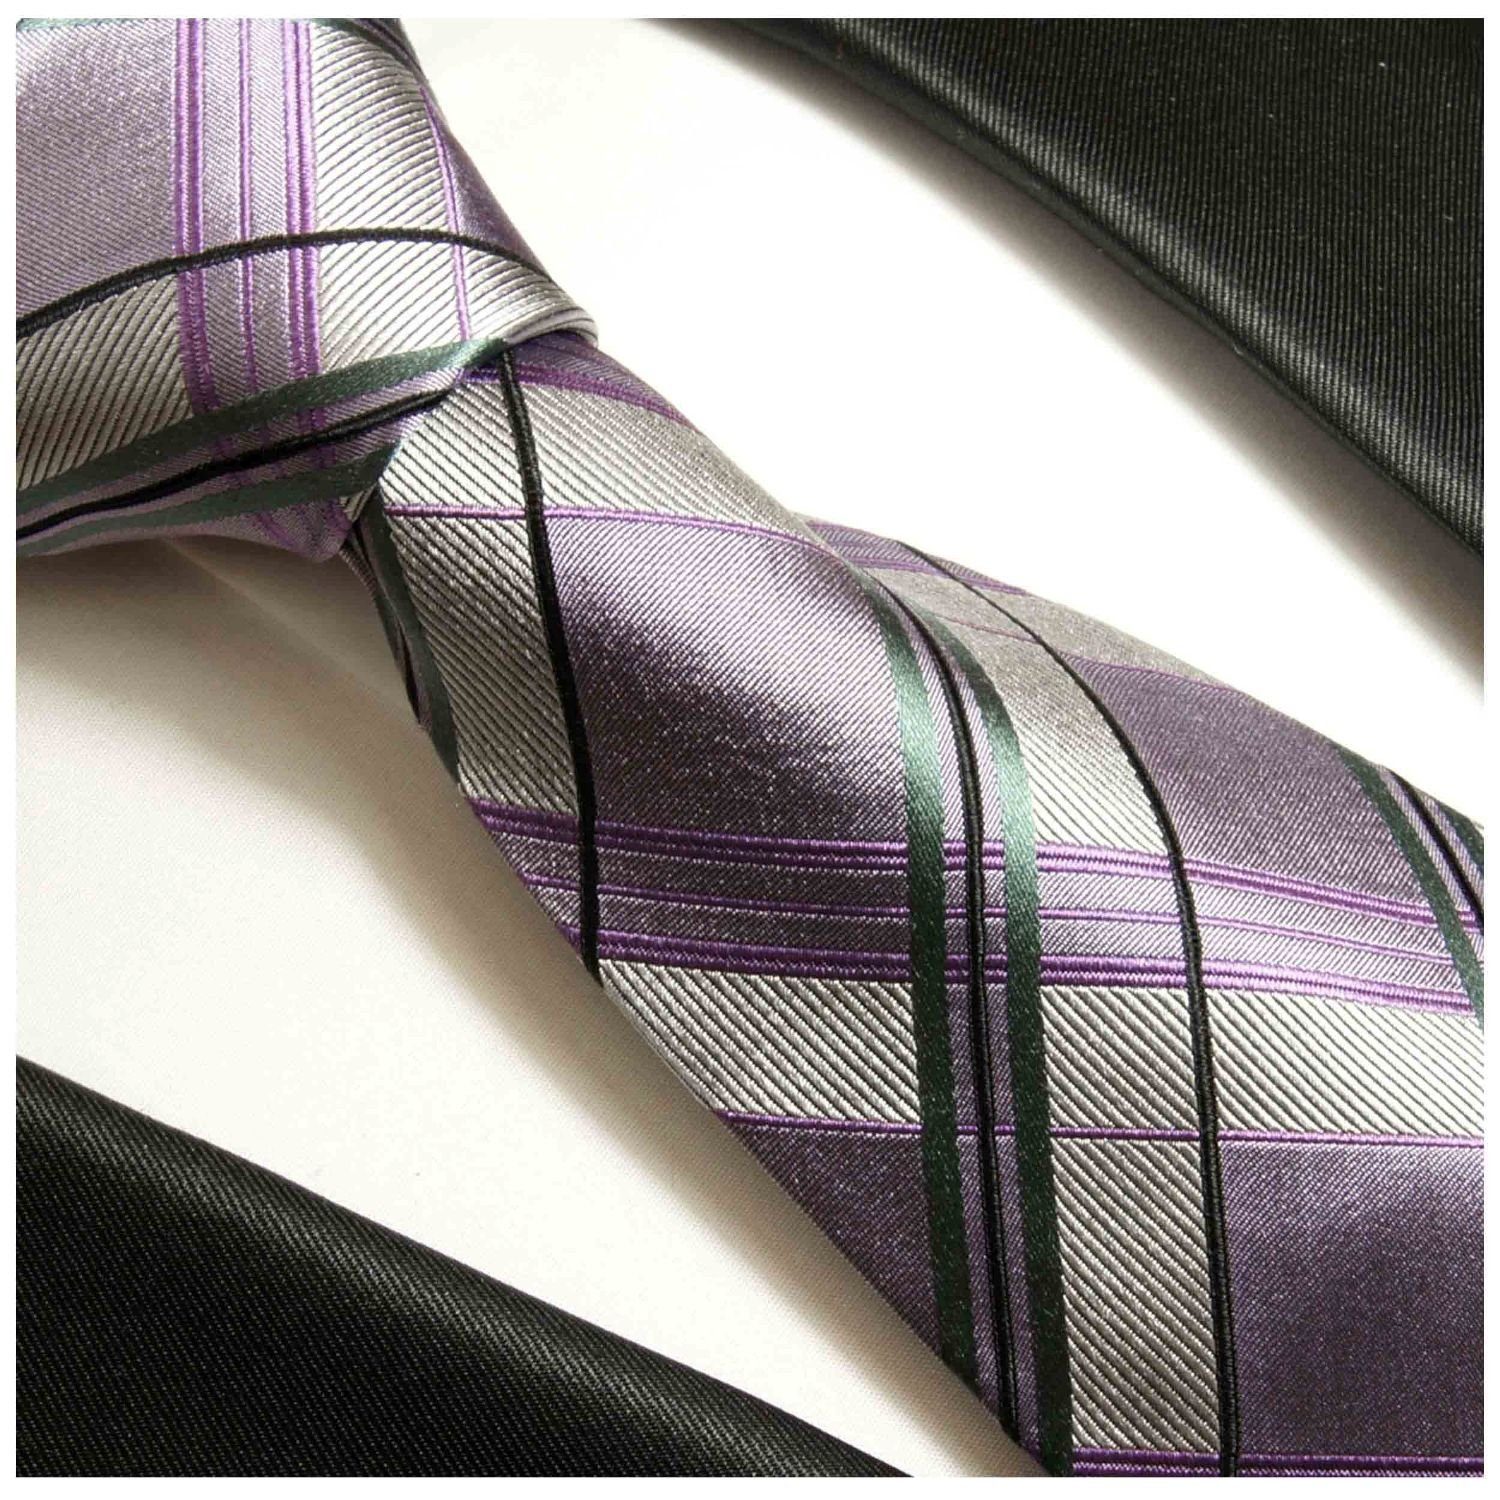 Paul Krawatte (6cm), Malone violett Einstecktuch) Seidenkrawatte modern Schottenmuster Schmal Krawatte und Herren lila grau (Set, 2-St., 507 mit Tuch silber Seide 100%